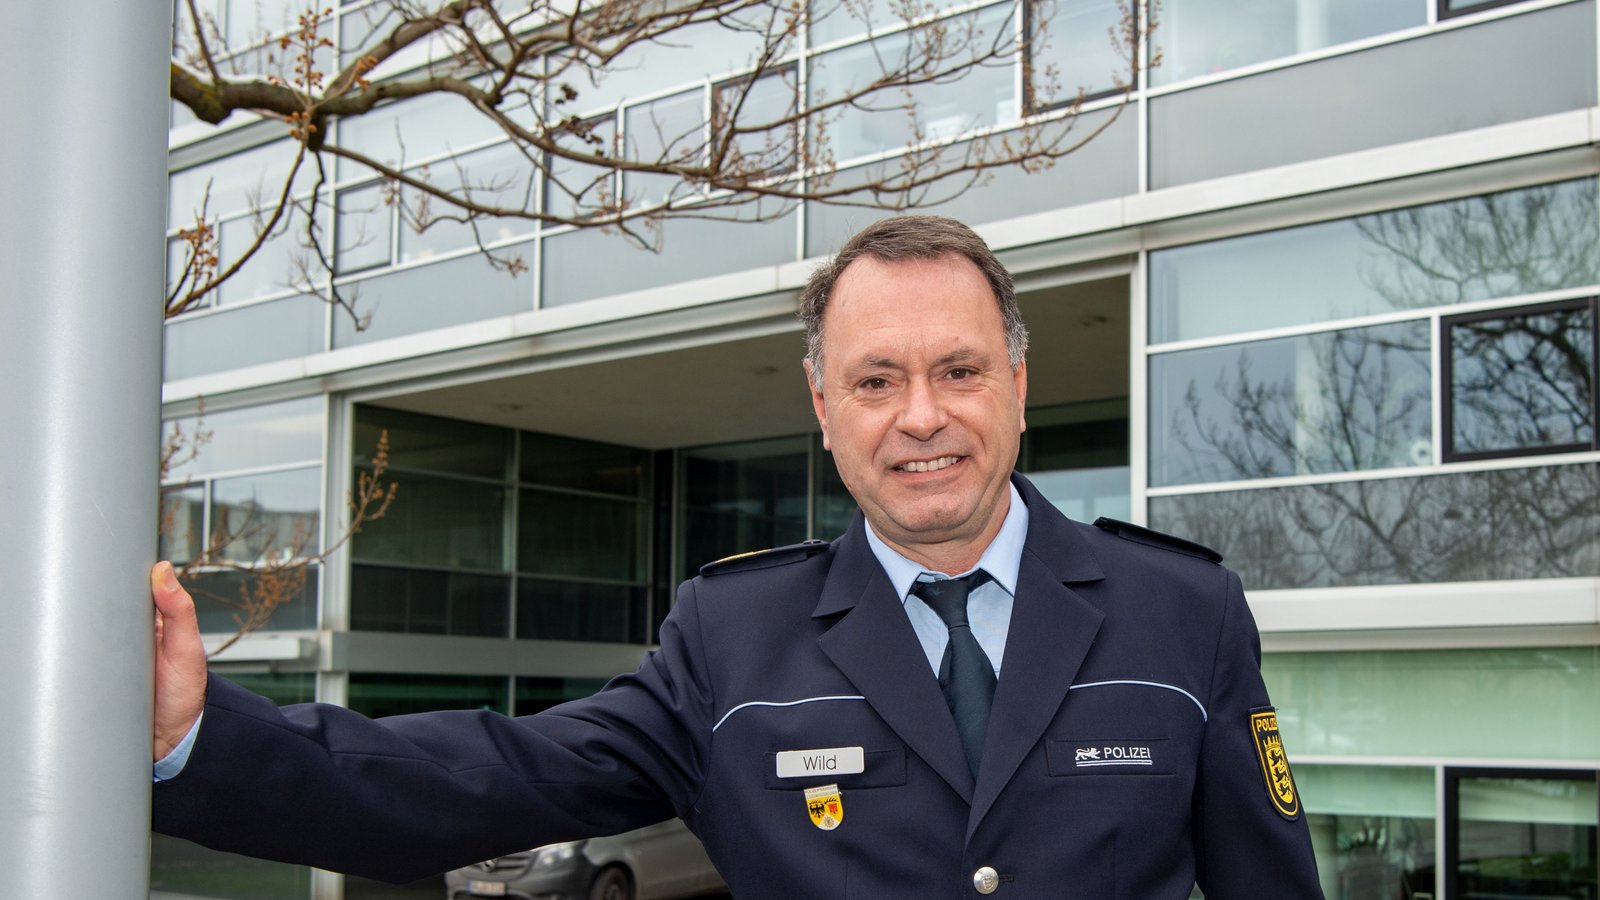 Thomas Wild ist der neue Polizeipräsident in Ludwigsburg. Foto: Kalb